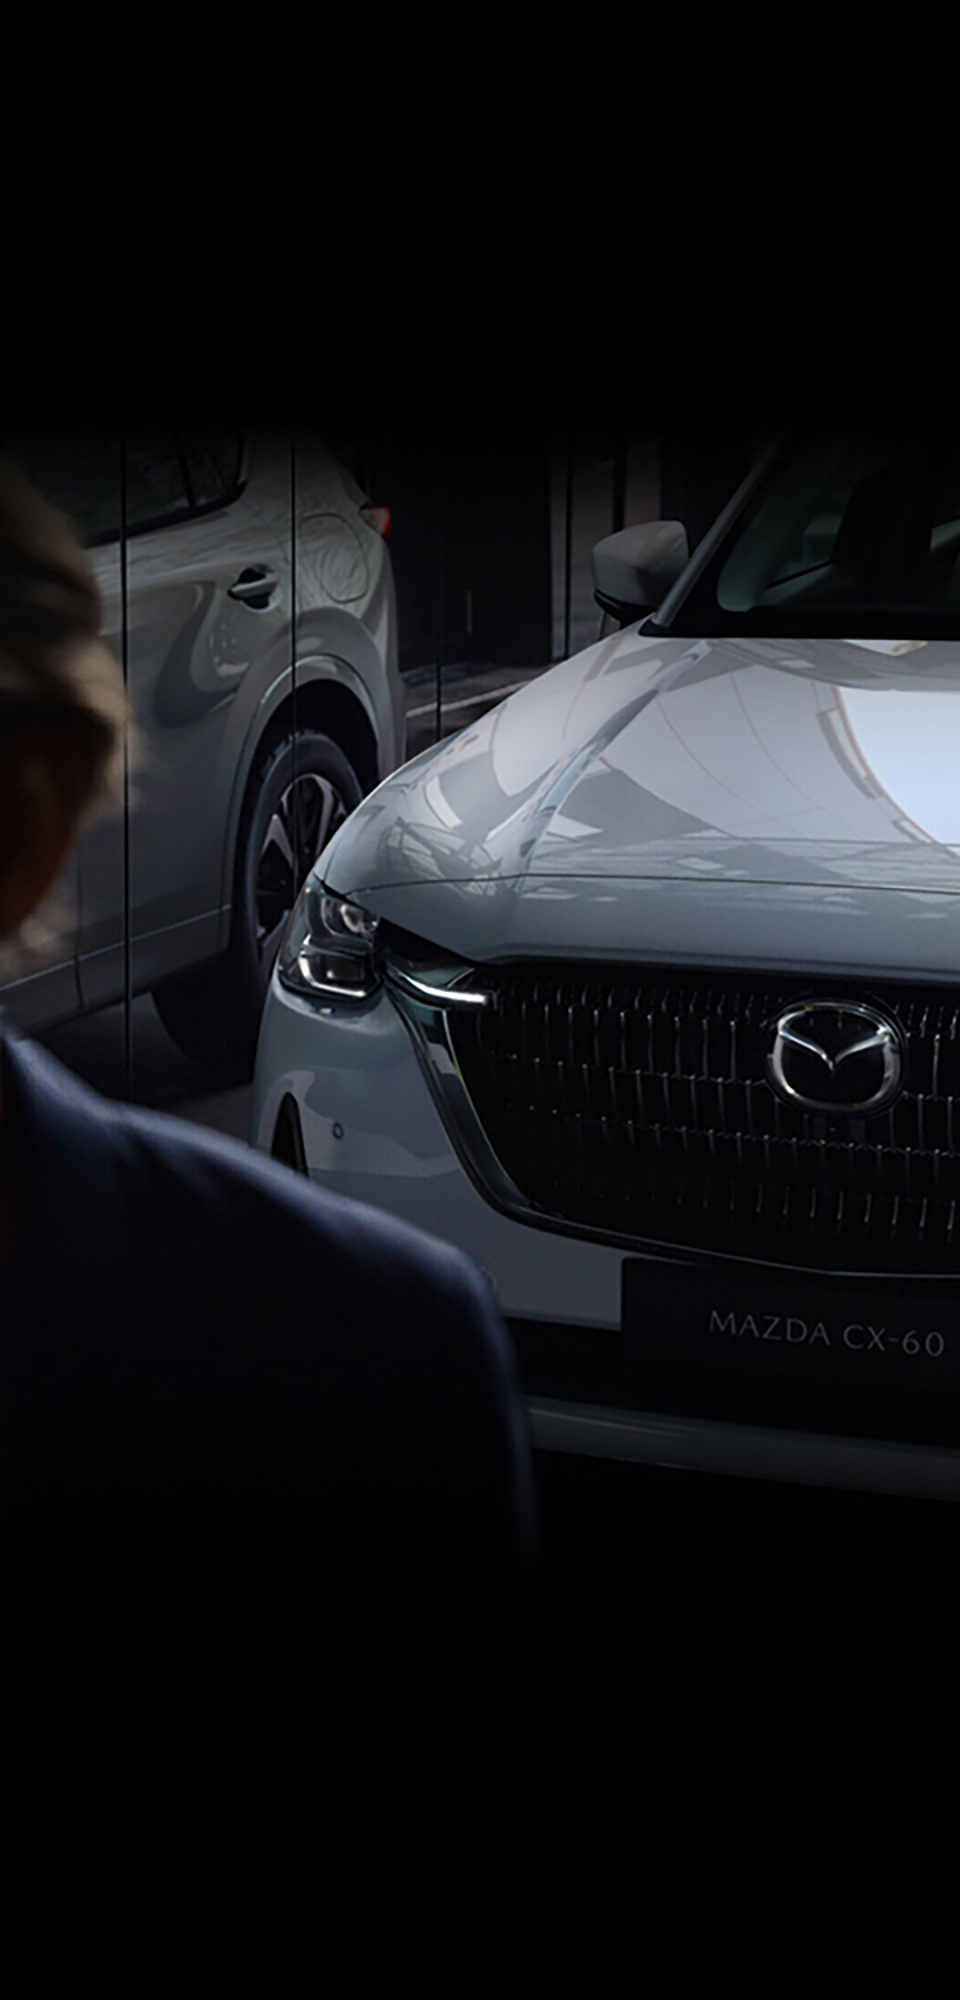 La All-New Mazda CX-60 SUV hybride rechargeable vue de l’avant se reflétant dans une vitrine.